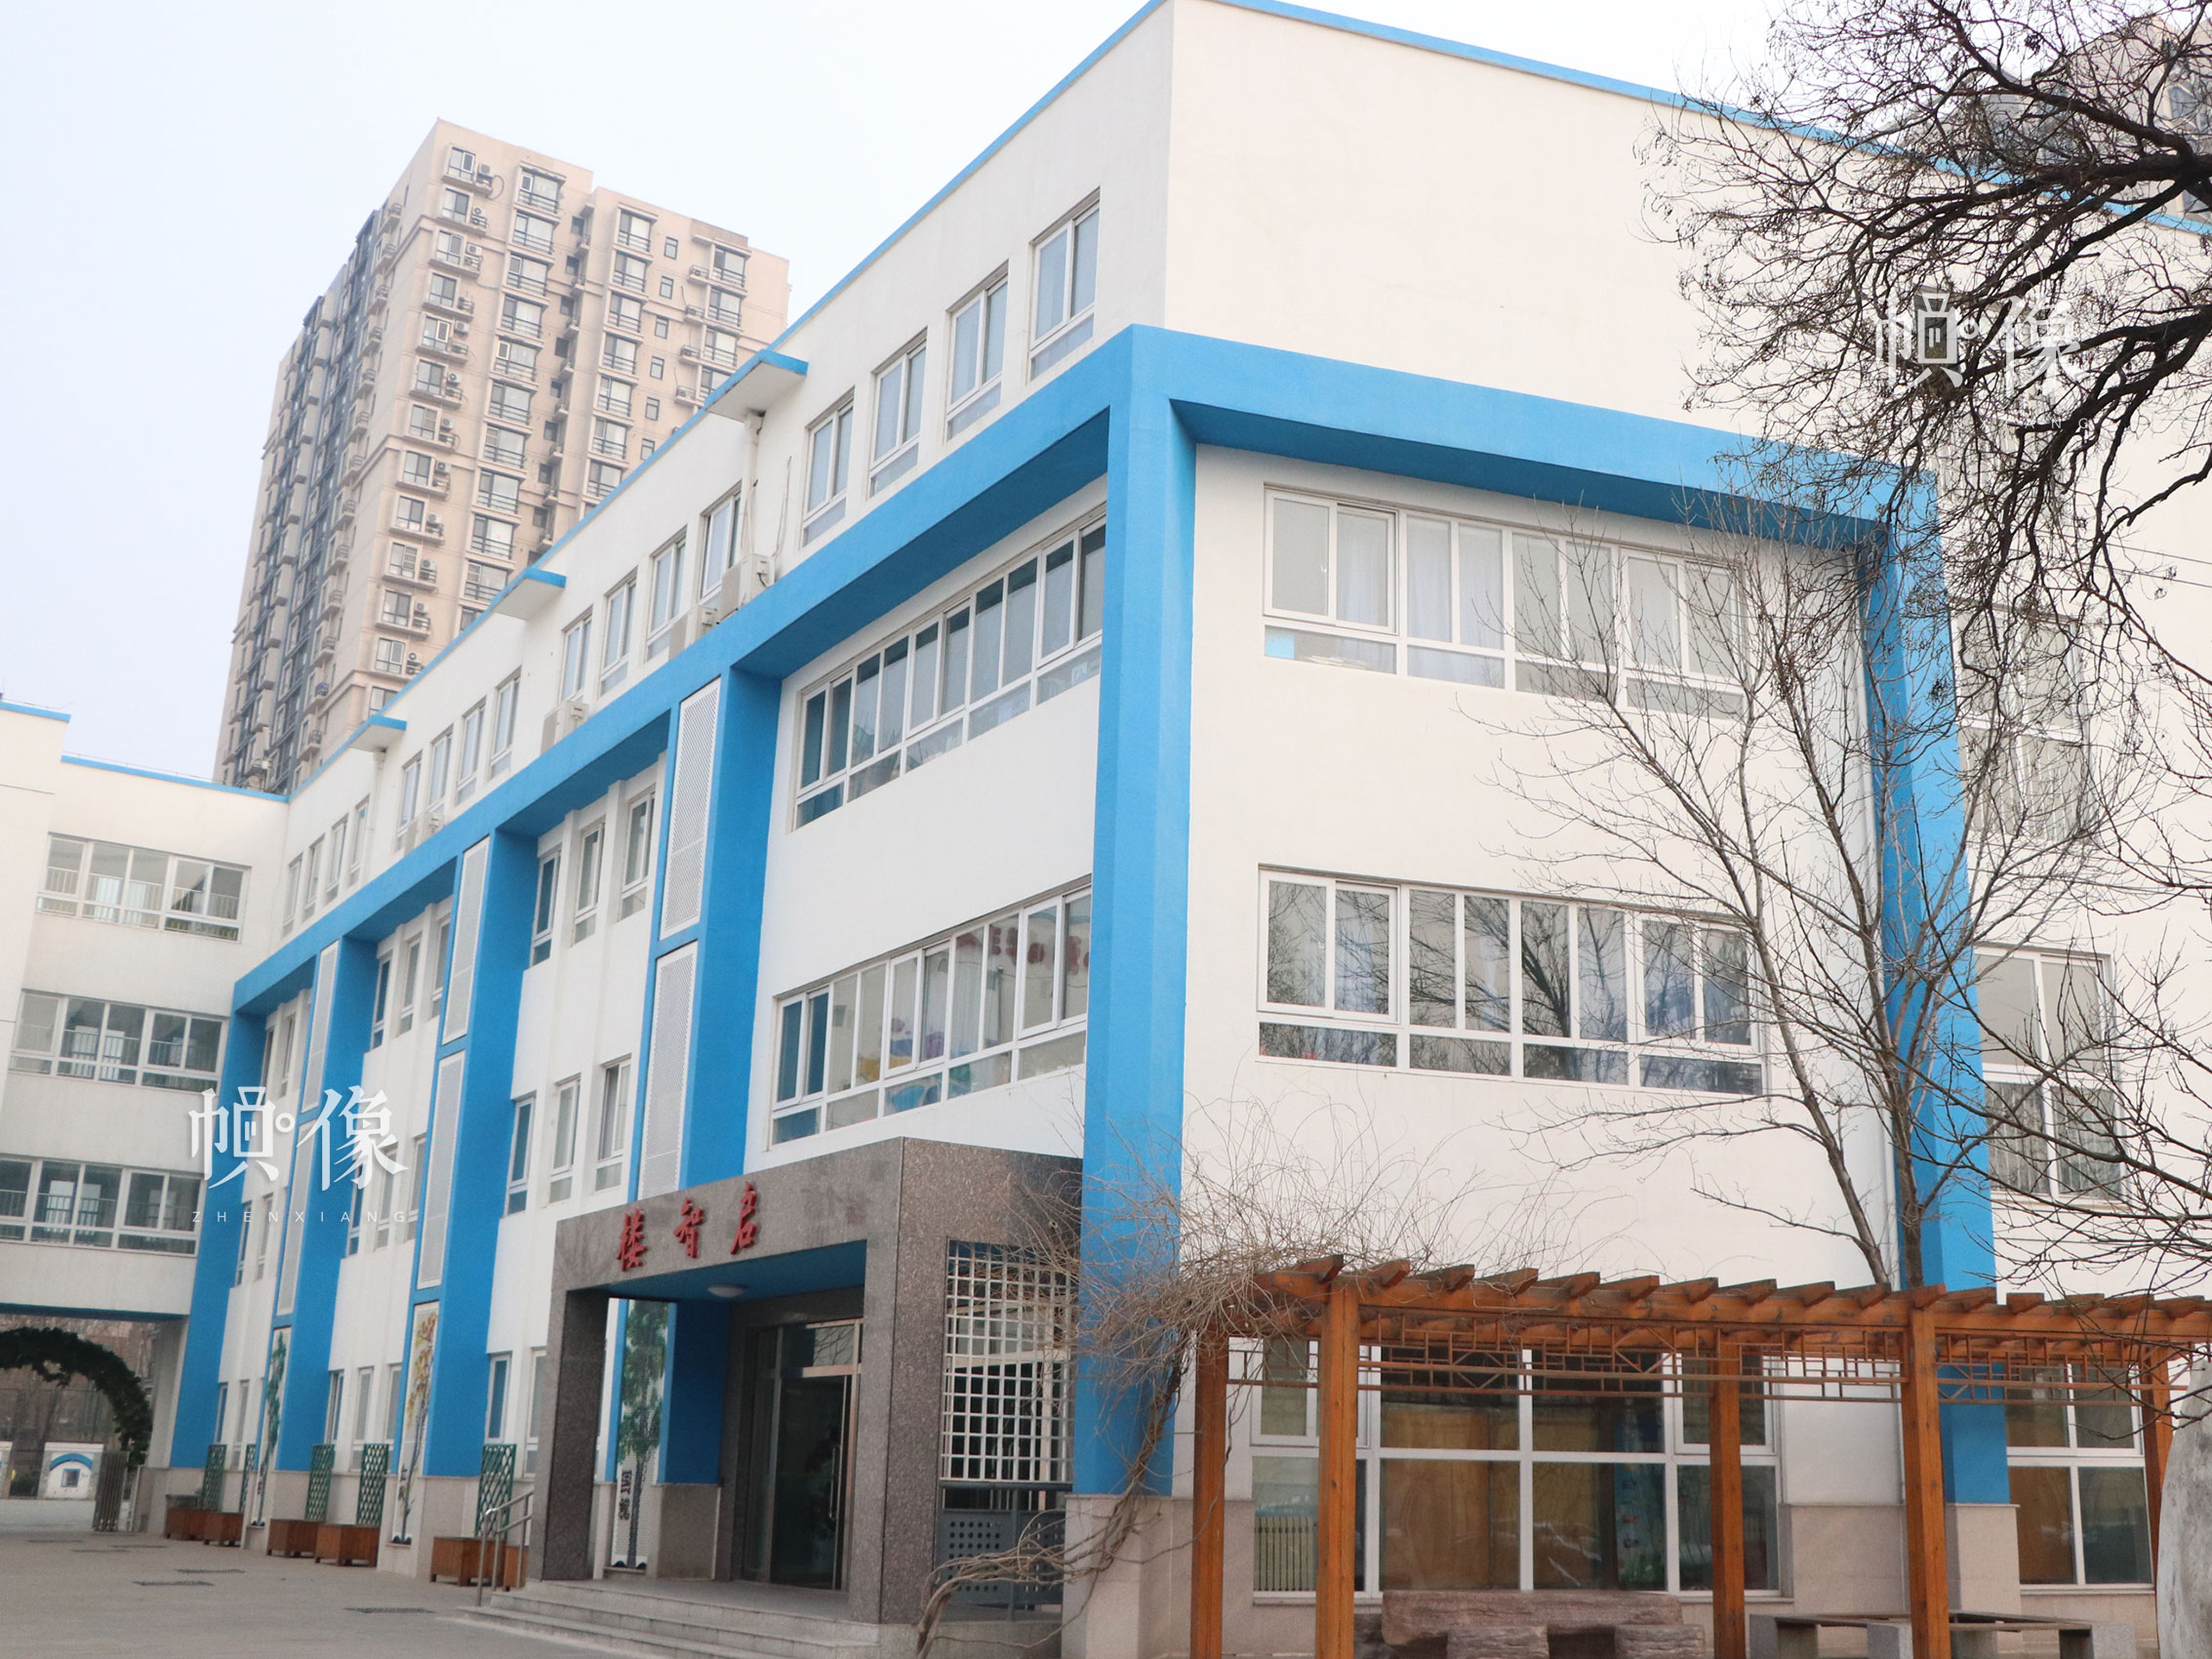 北京市豐台區某小學教學樓。中國網實習記者 韓依 攝